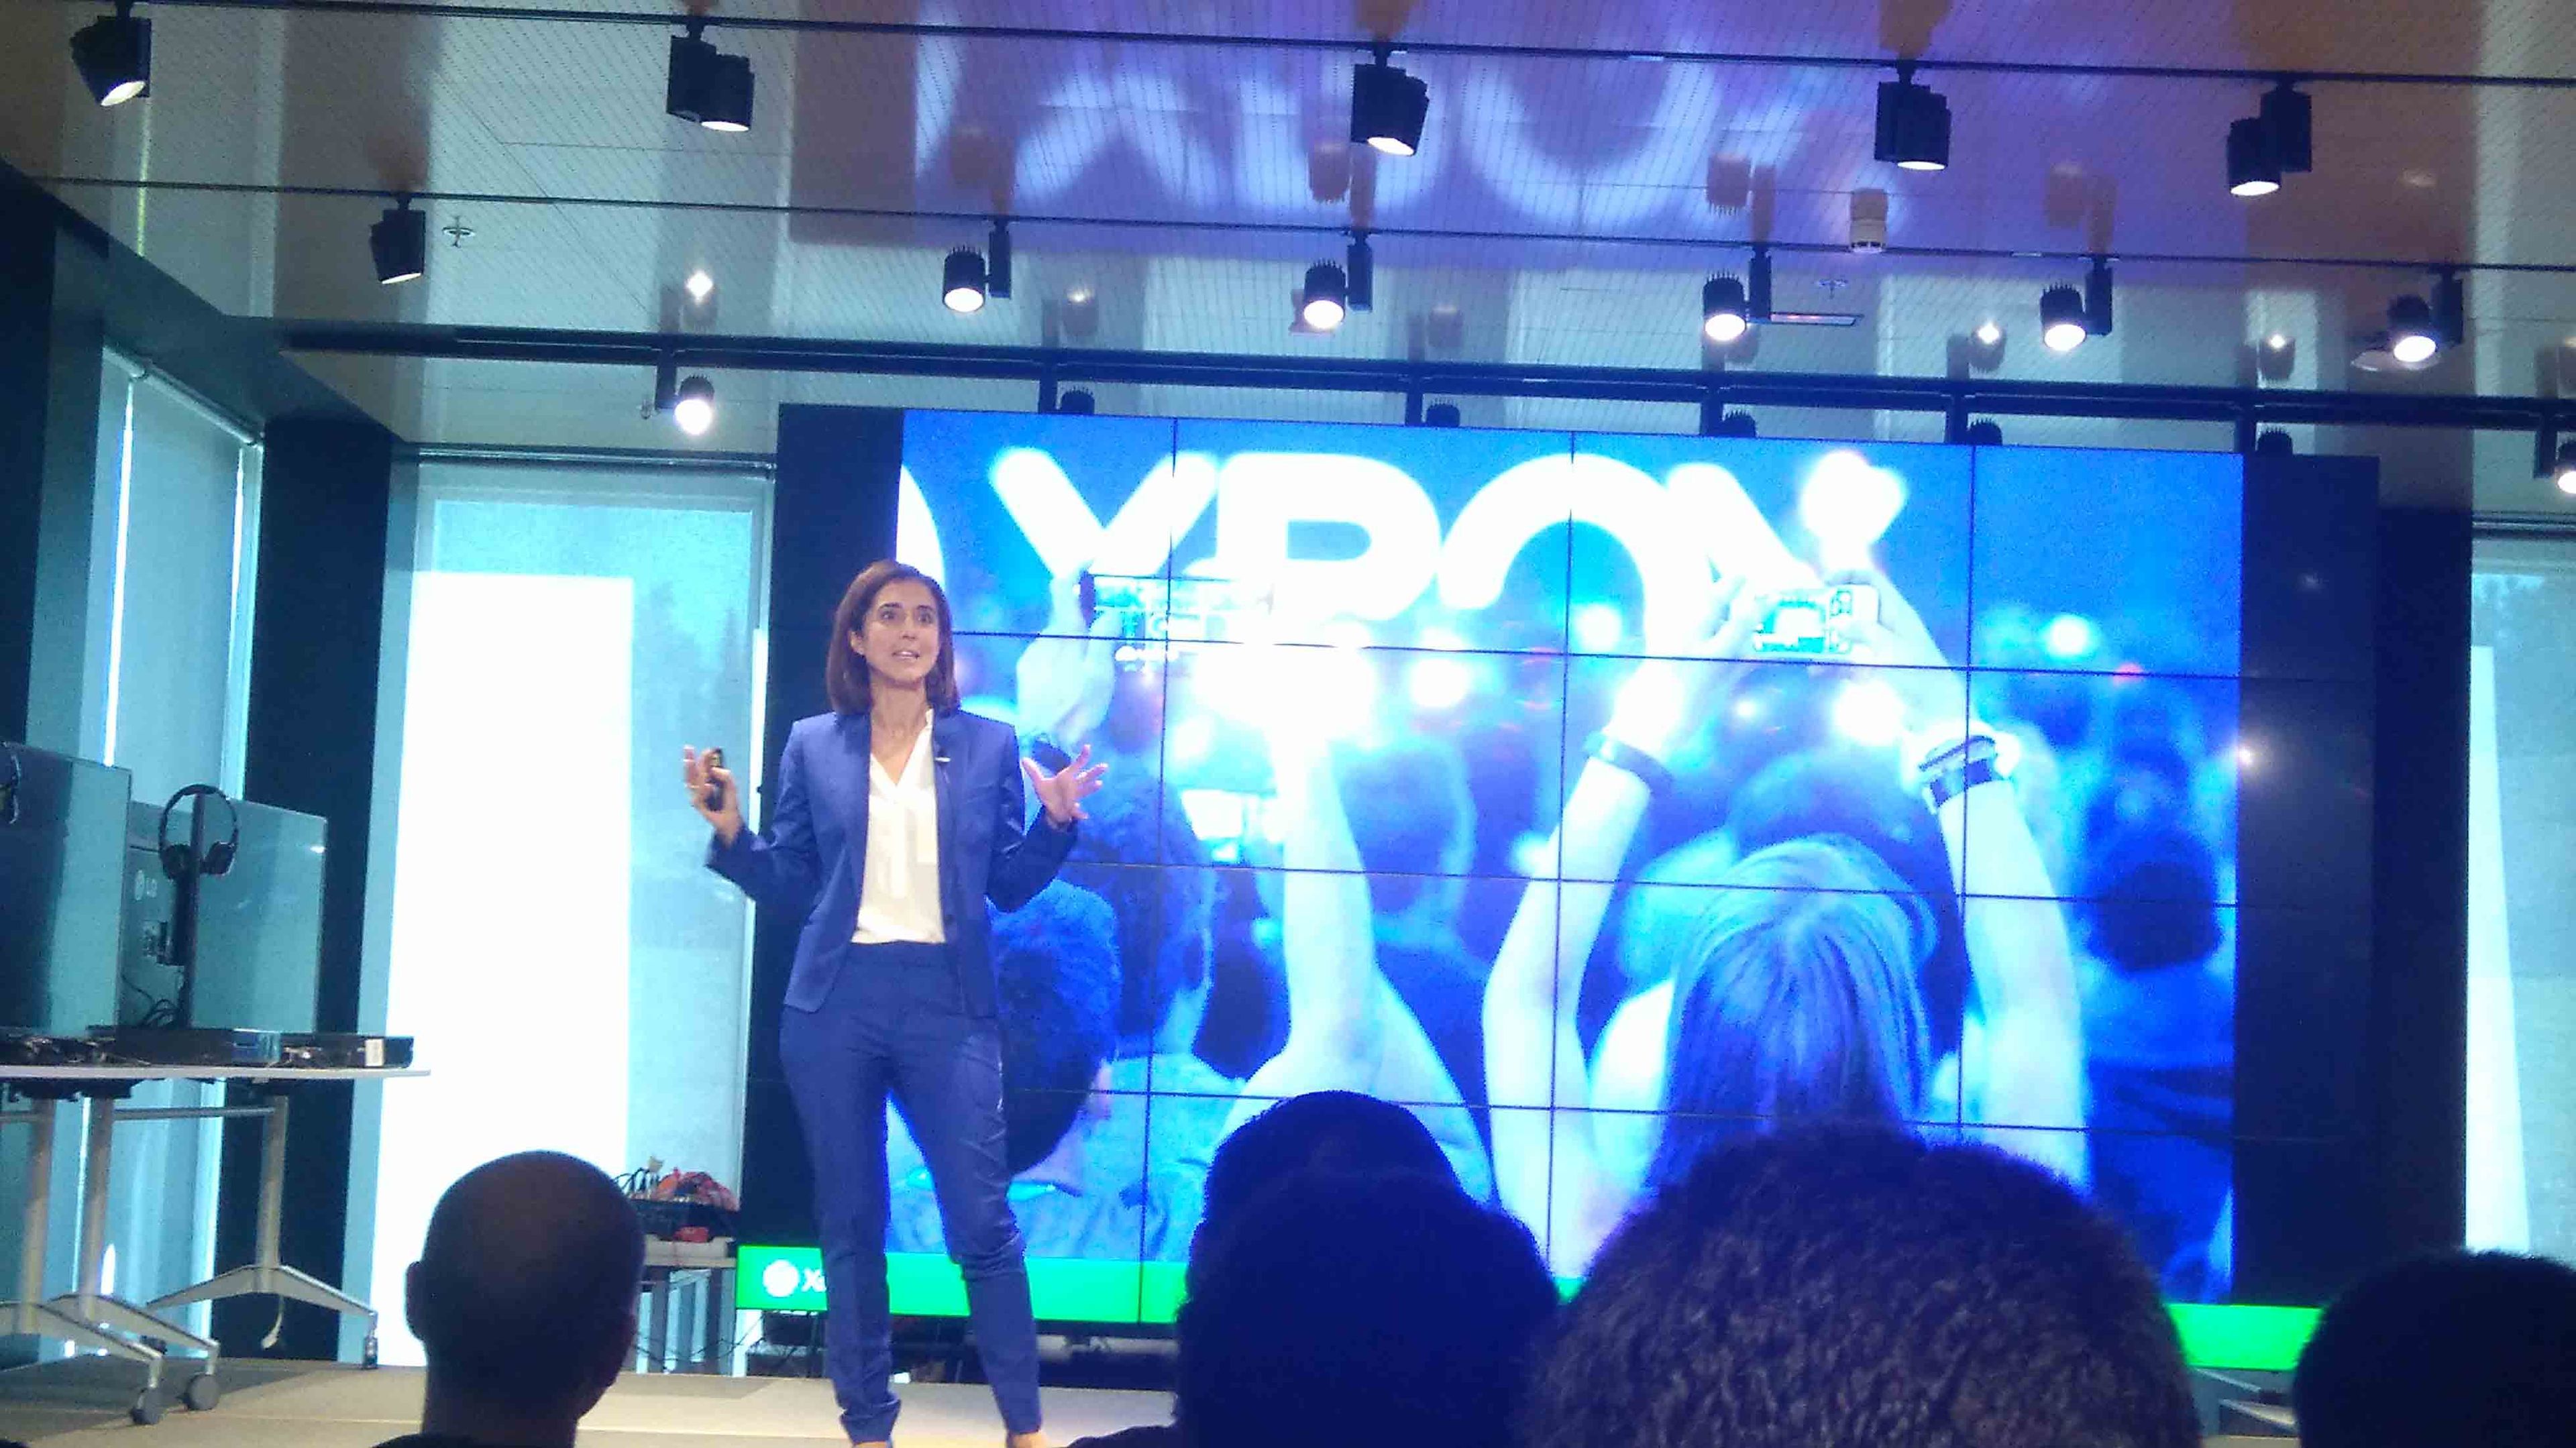 Pilar López, Presidente de Microsoft Ibérica, dedicó palabras de agradecimiento a los más de 54 millones de usuarios de Xbox Live.